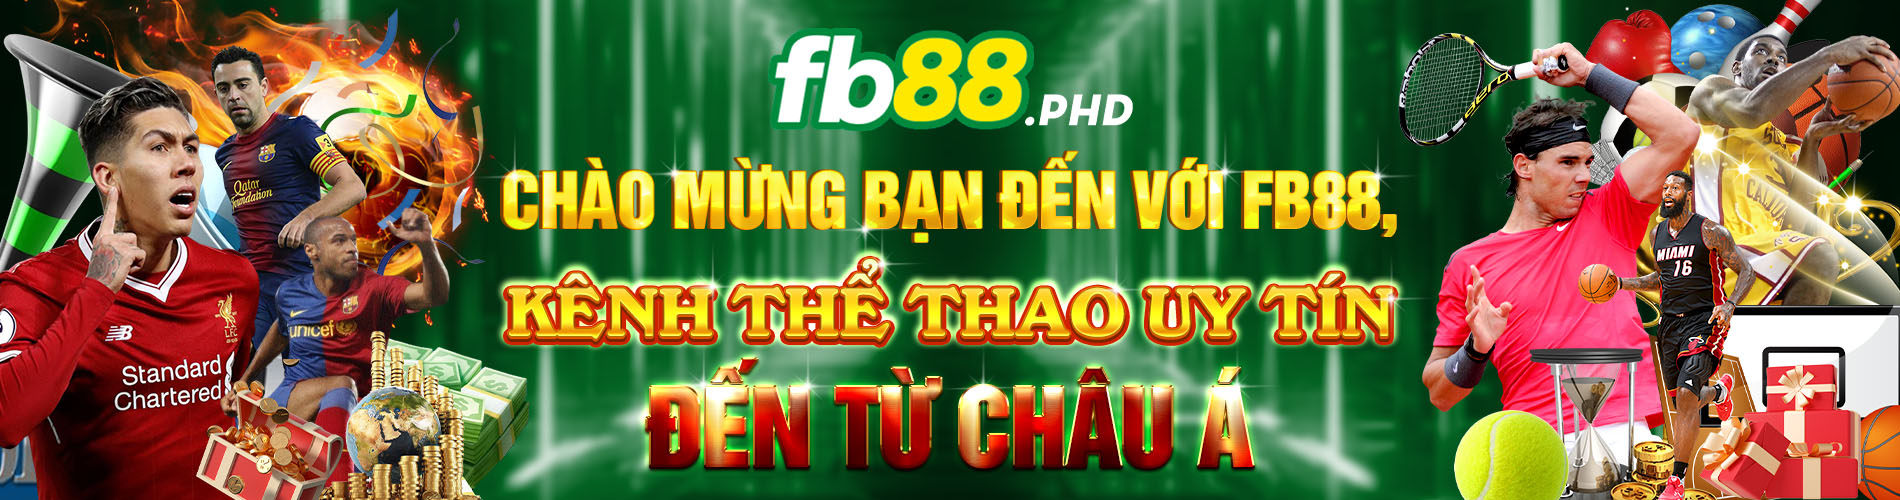 Chào mừng bạn đến với fb88 kênh thể thao uy tín đến từ châu Á